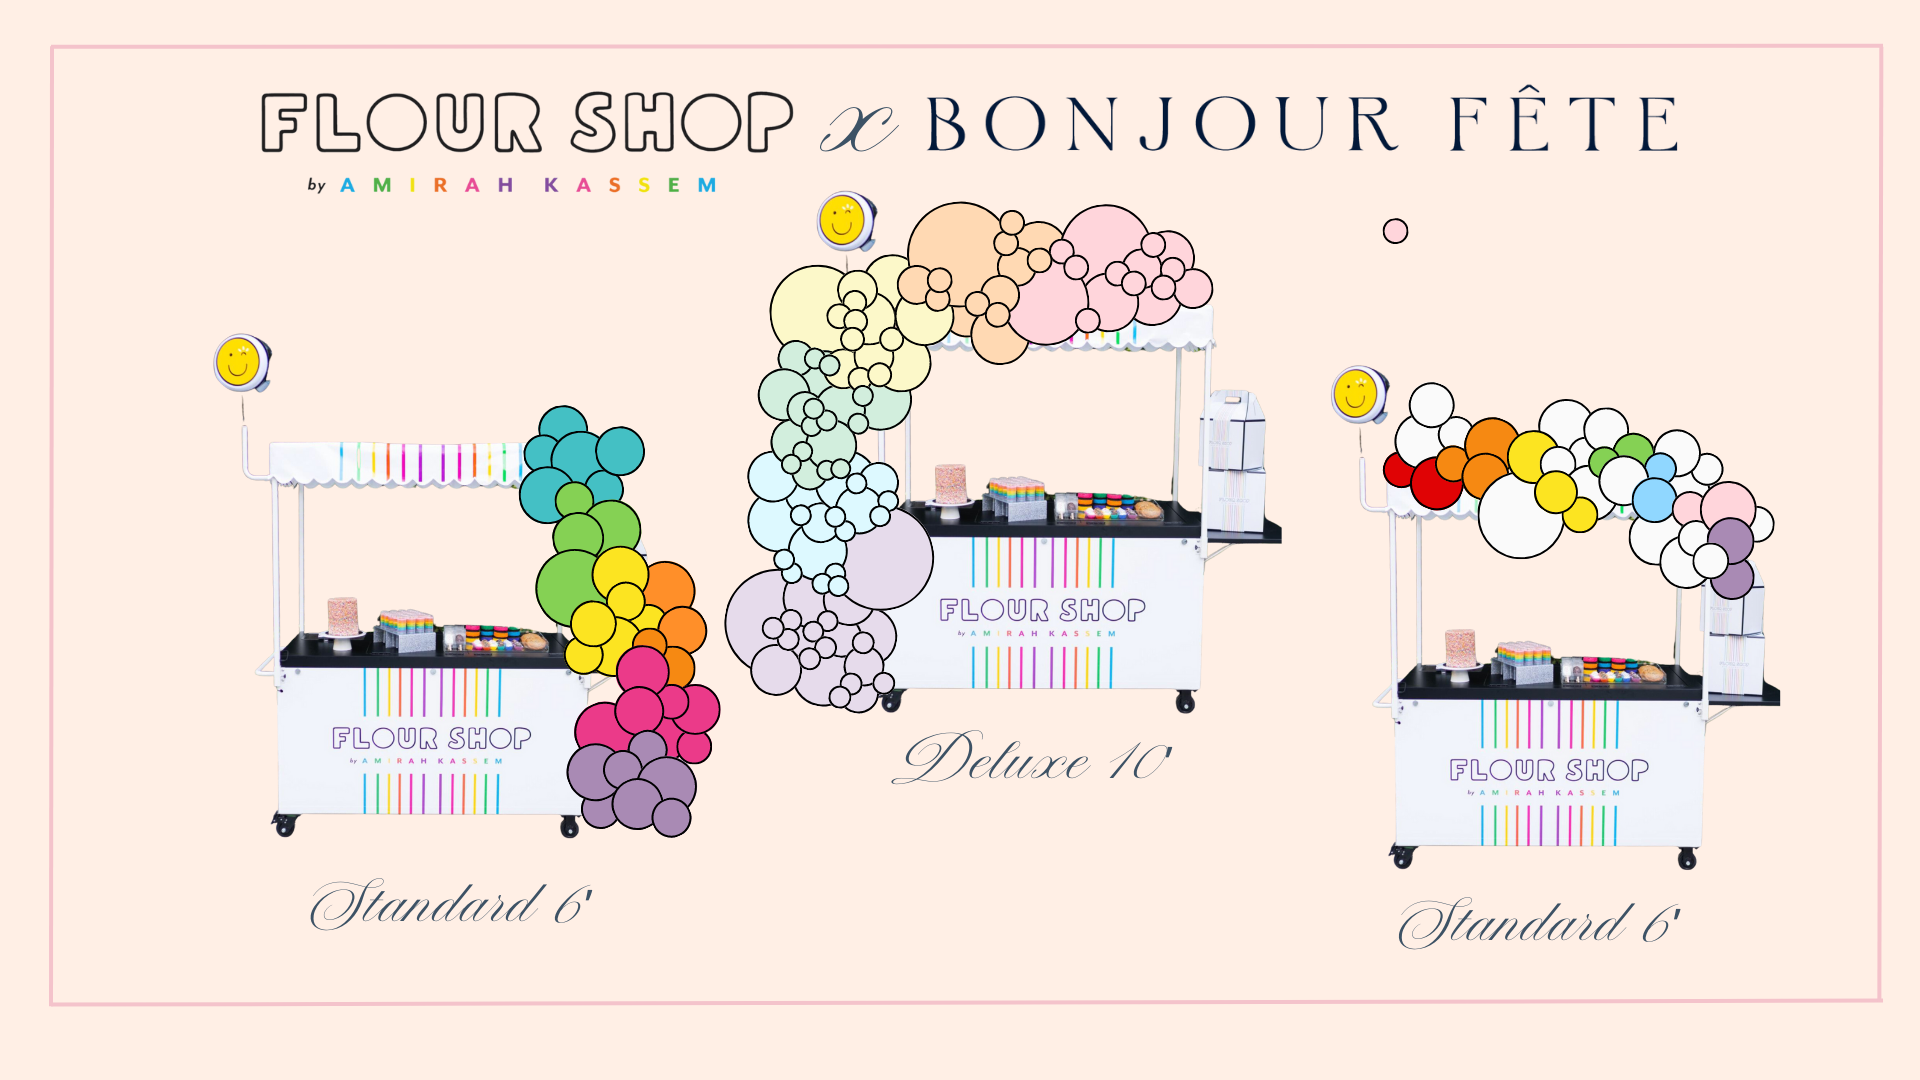 Bonjour Fête balloon garland styles for the Flour Shop dessert cart.